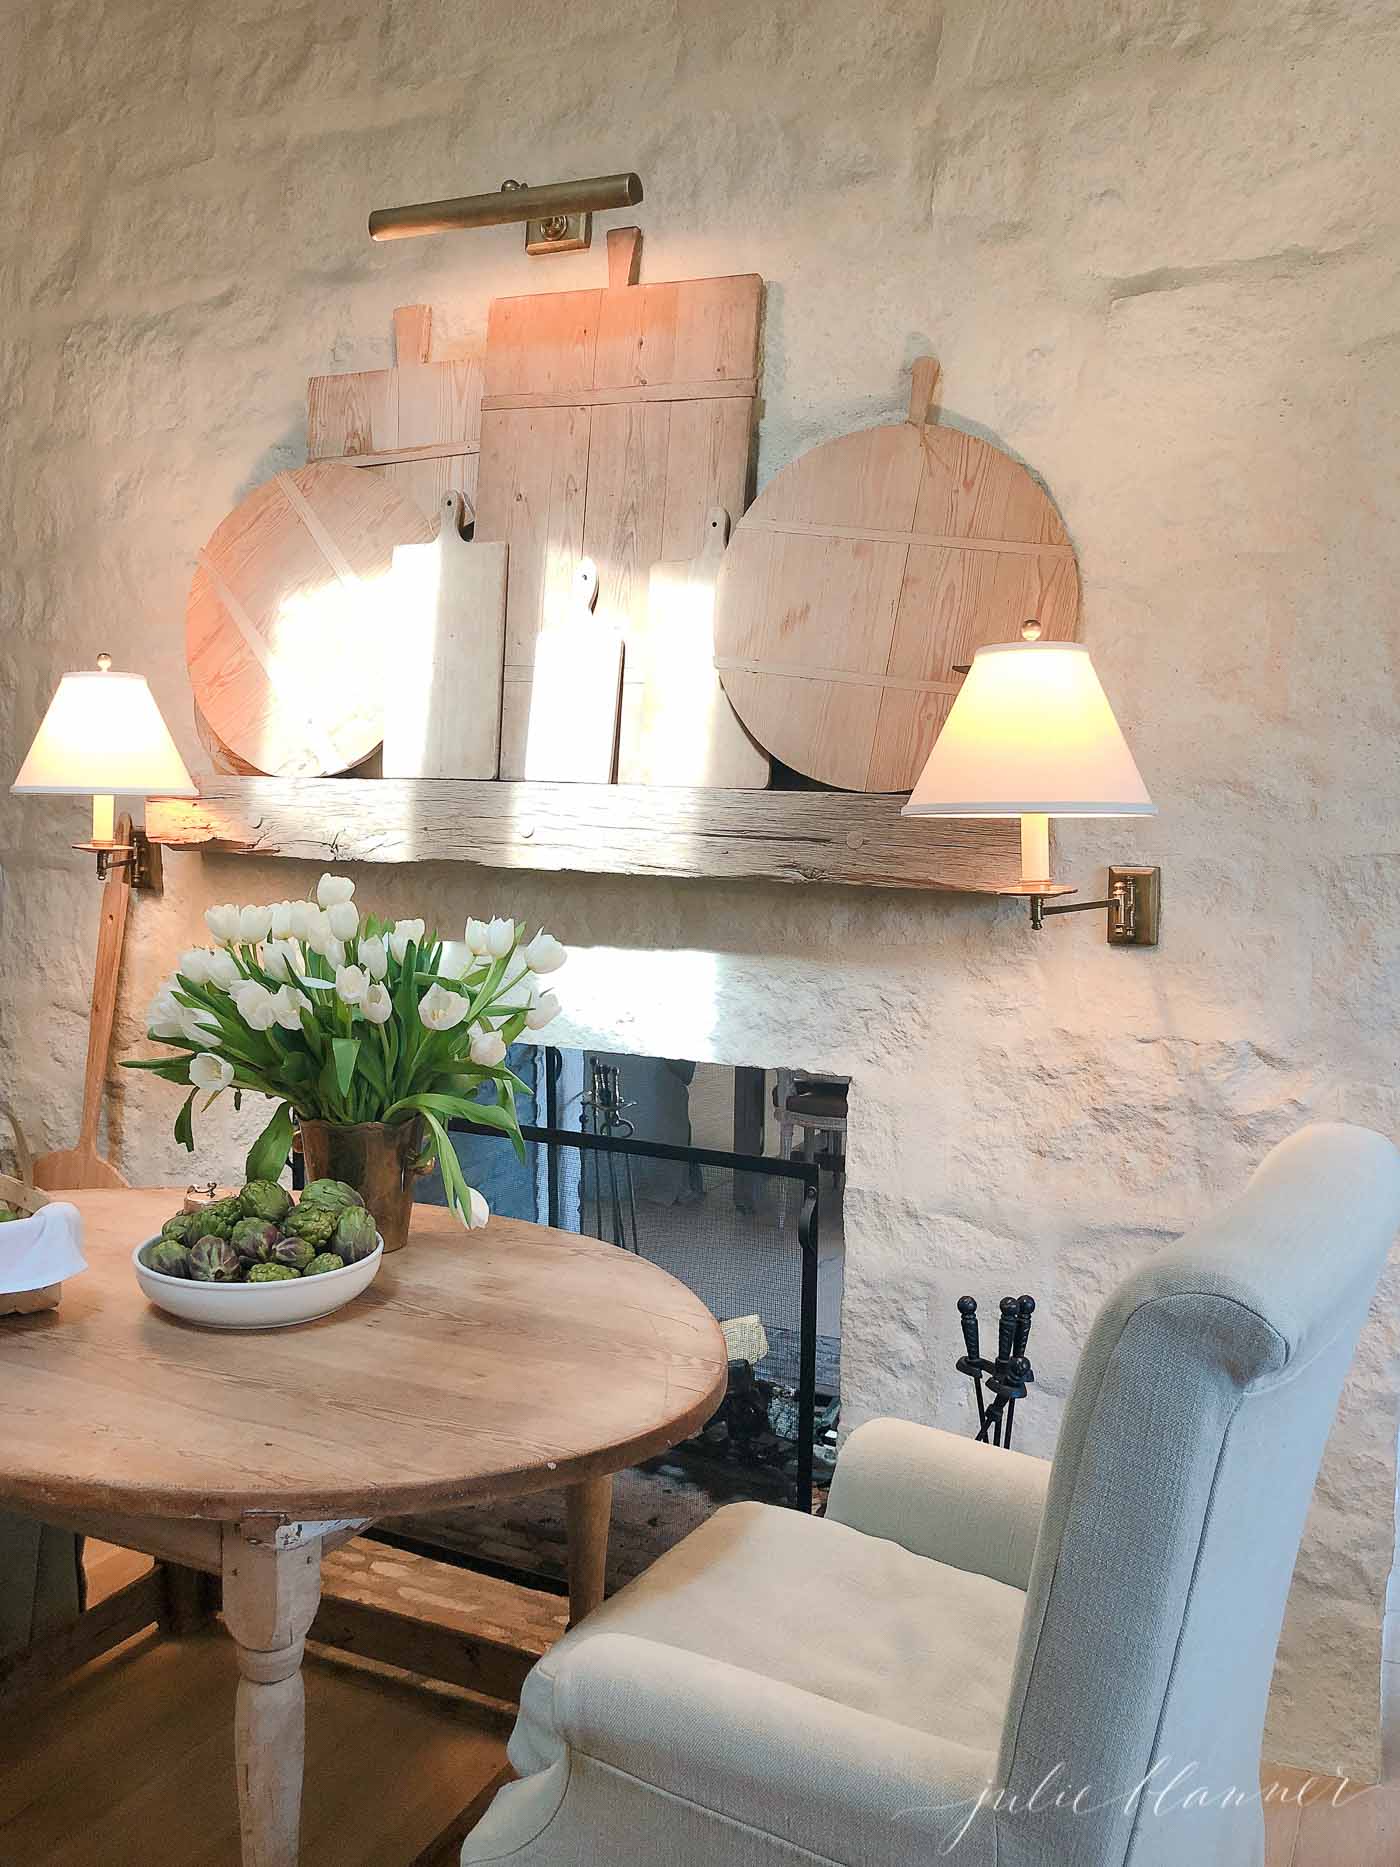 法式风格的壁炉和迷人的早餐桌。